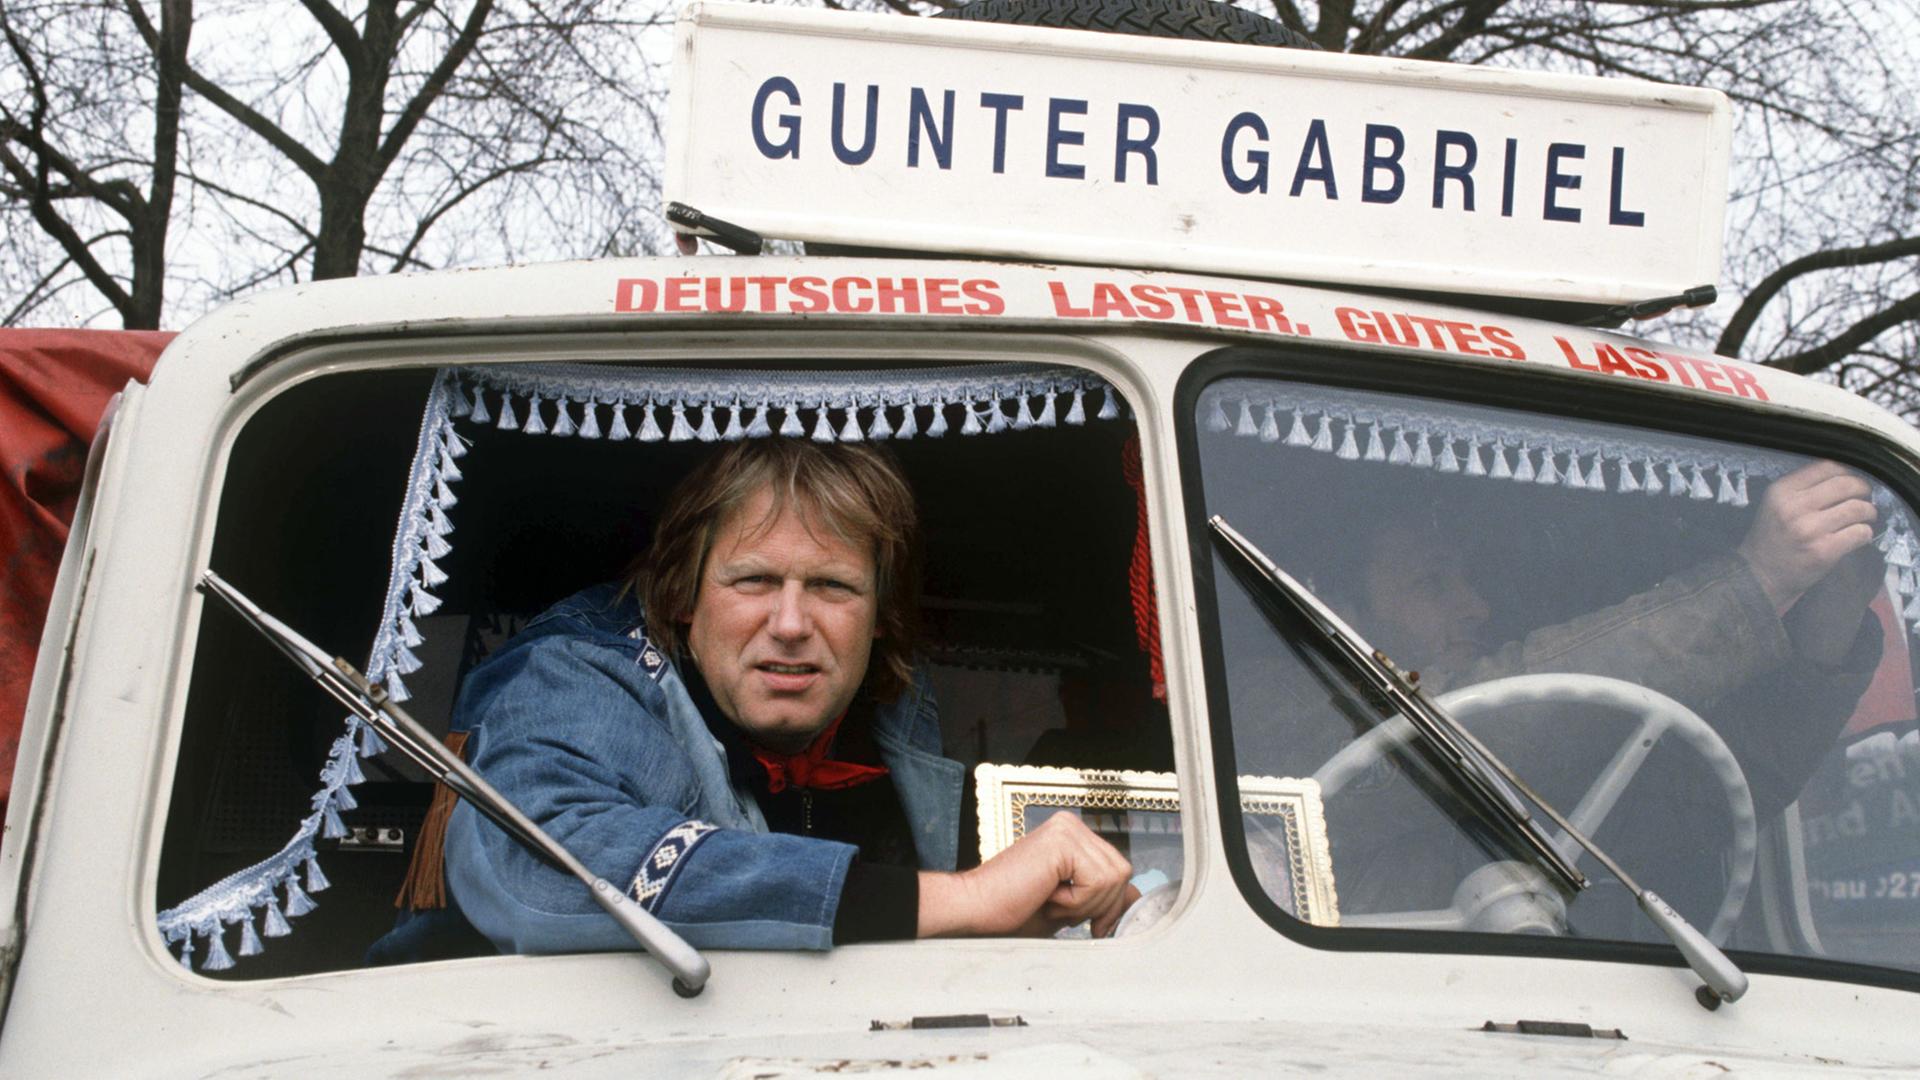 Der Country- und Schlagersänger Gunter Gabriel auf dem Beifahrersitz eines Lastwagens.